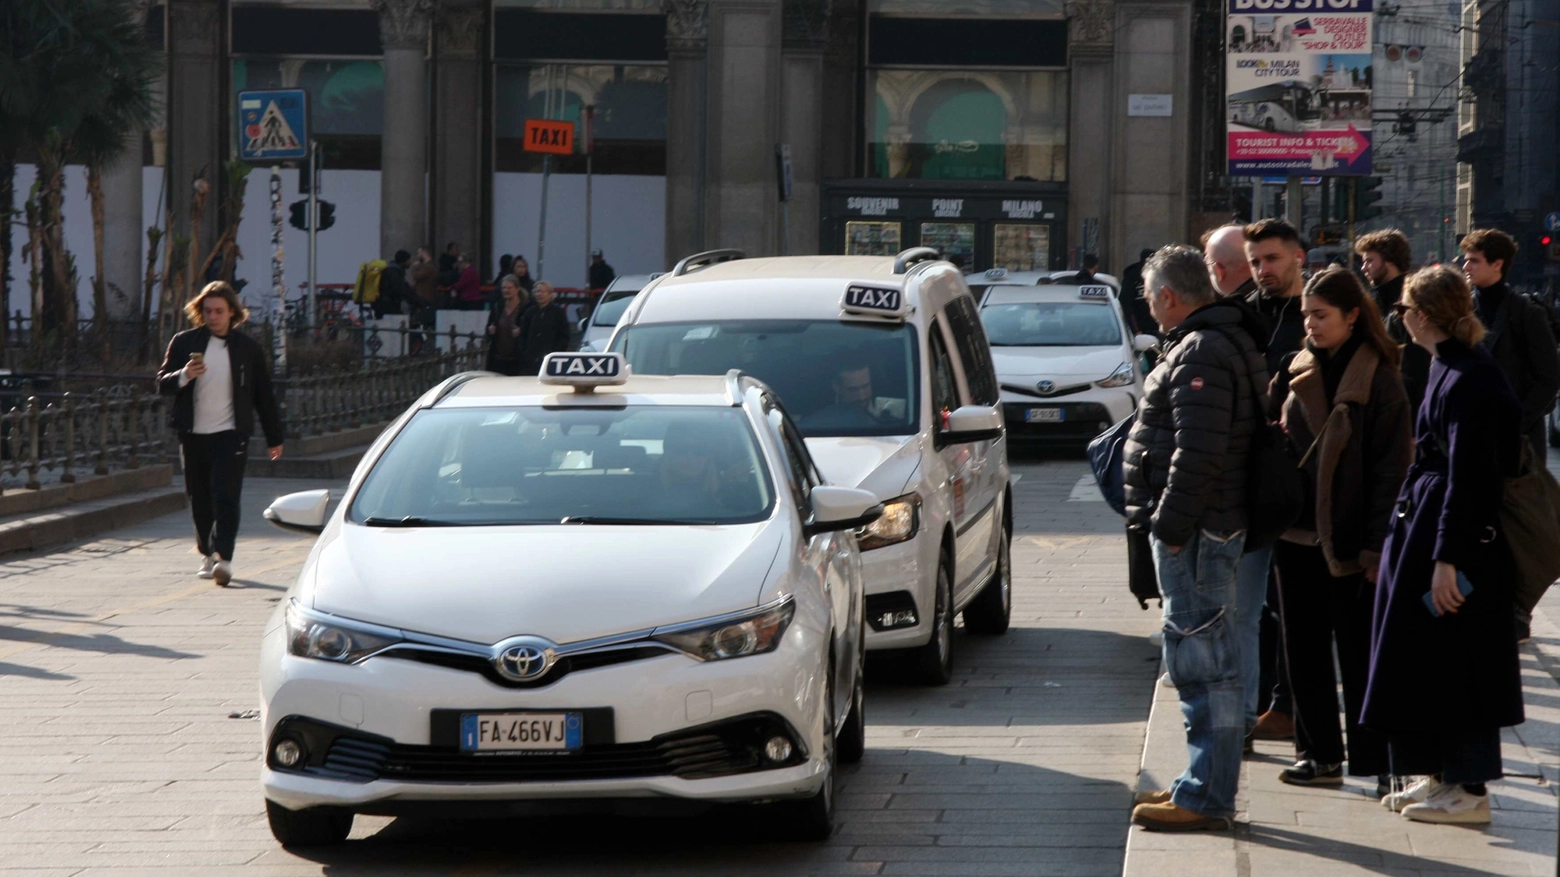 Persone in coda in attesa di un taxi libero a Milano